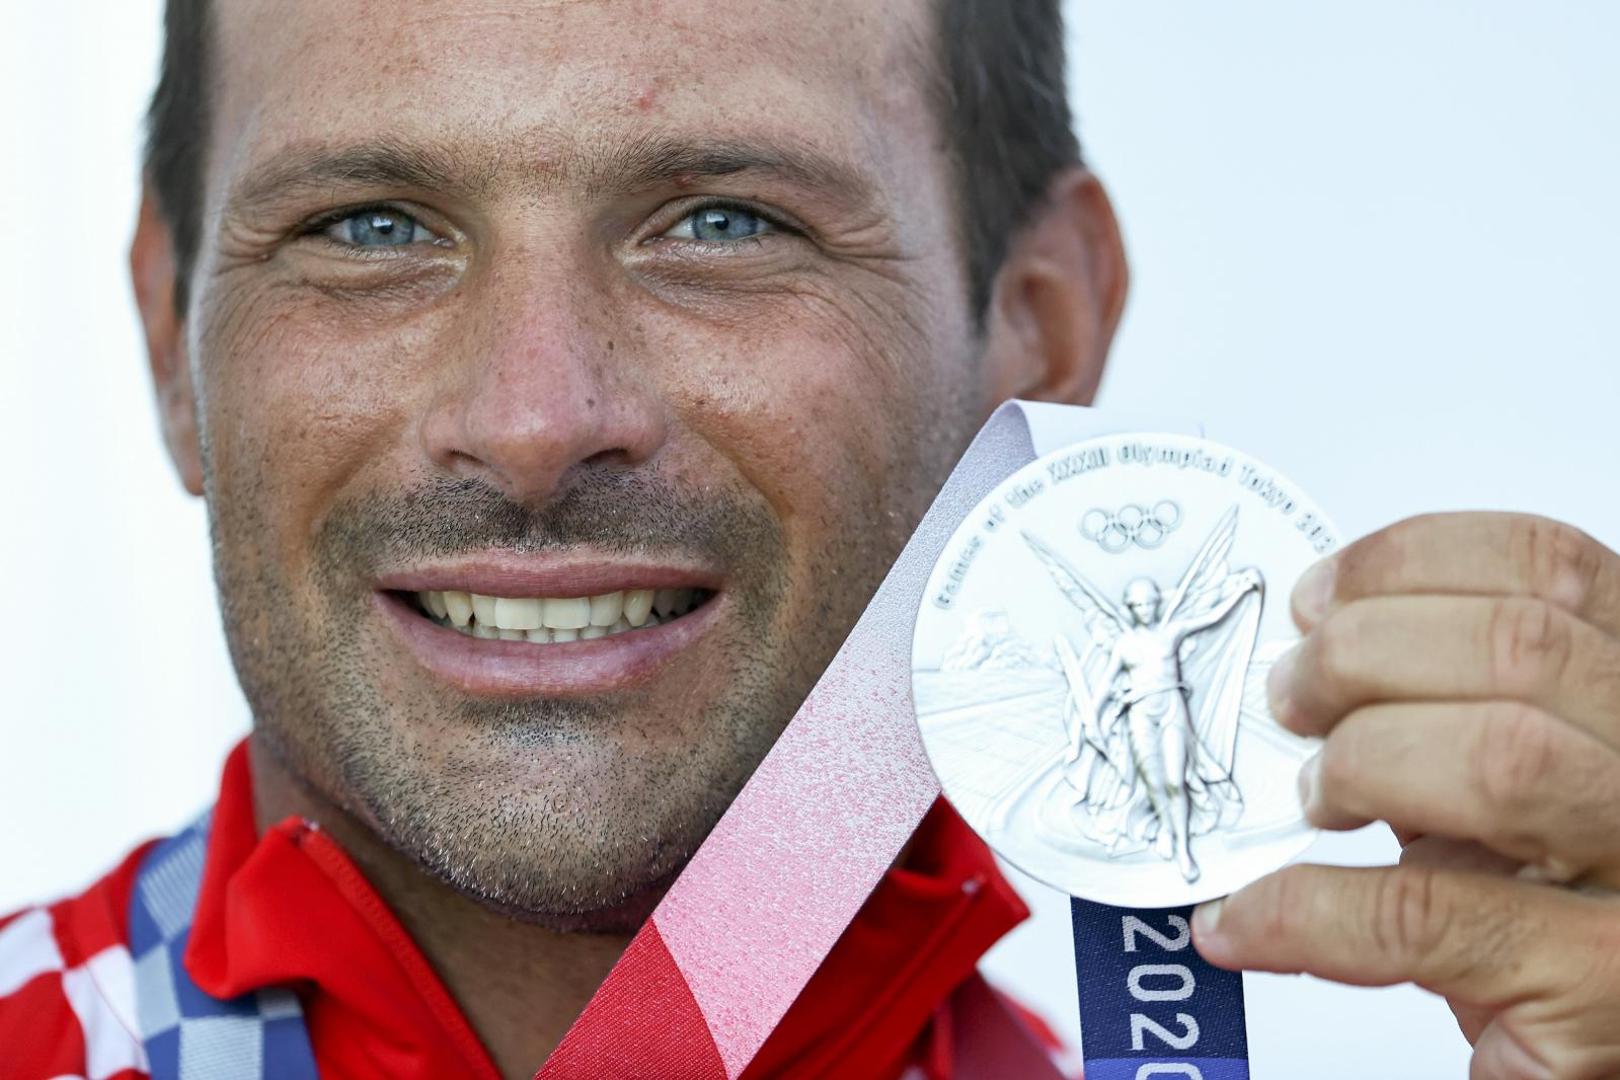 Hrvatski jedriličar Tonći Stipanović osvojio je srebrnu medalju u klasi Laser na olimpijskoj regati u Enoshimi. Zlatnu medalju osvojio je Matt Wearn iz Australije, a brončanu Matt Wearn iz Norveske